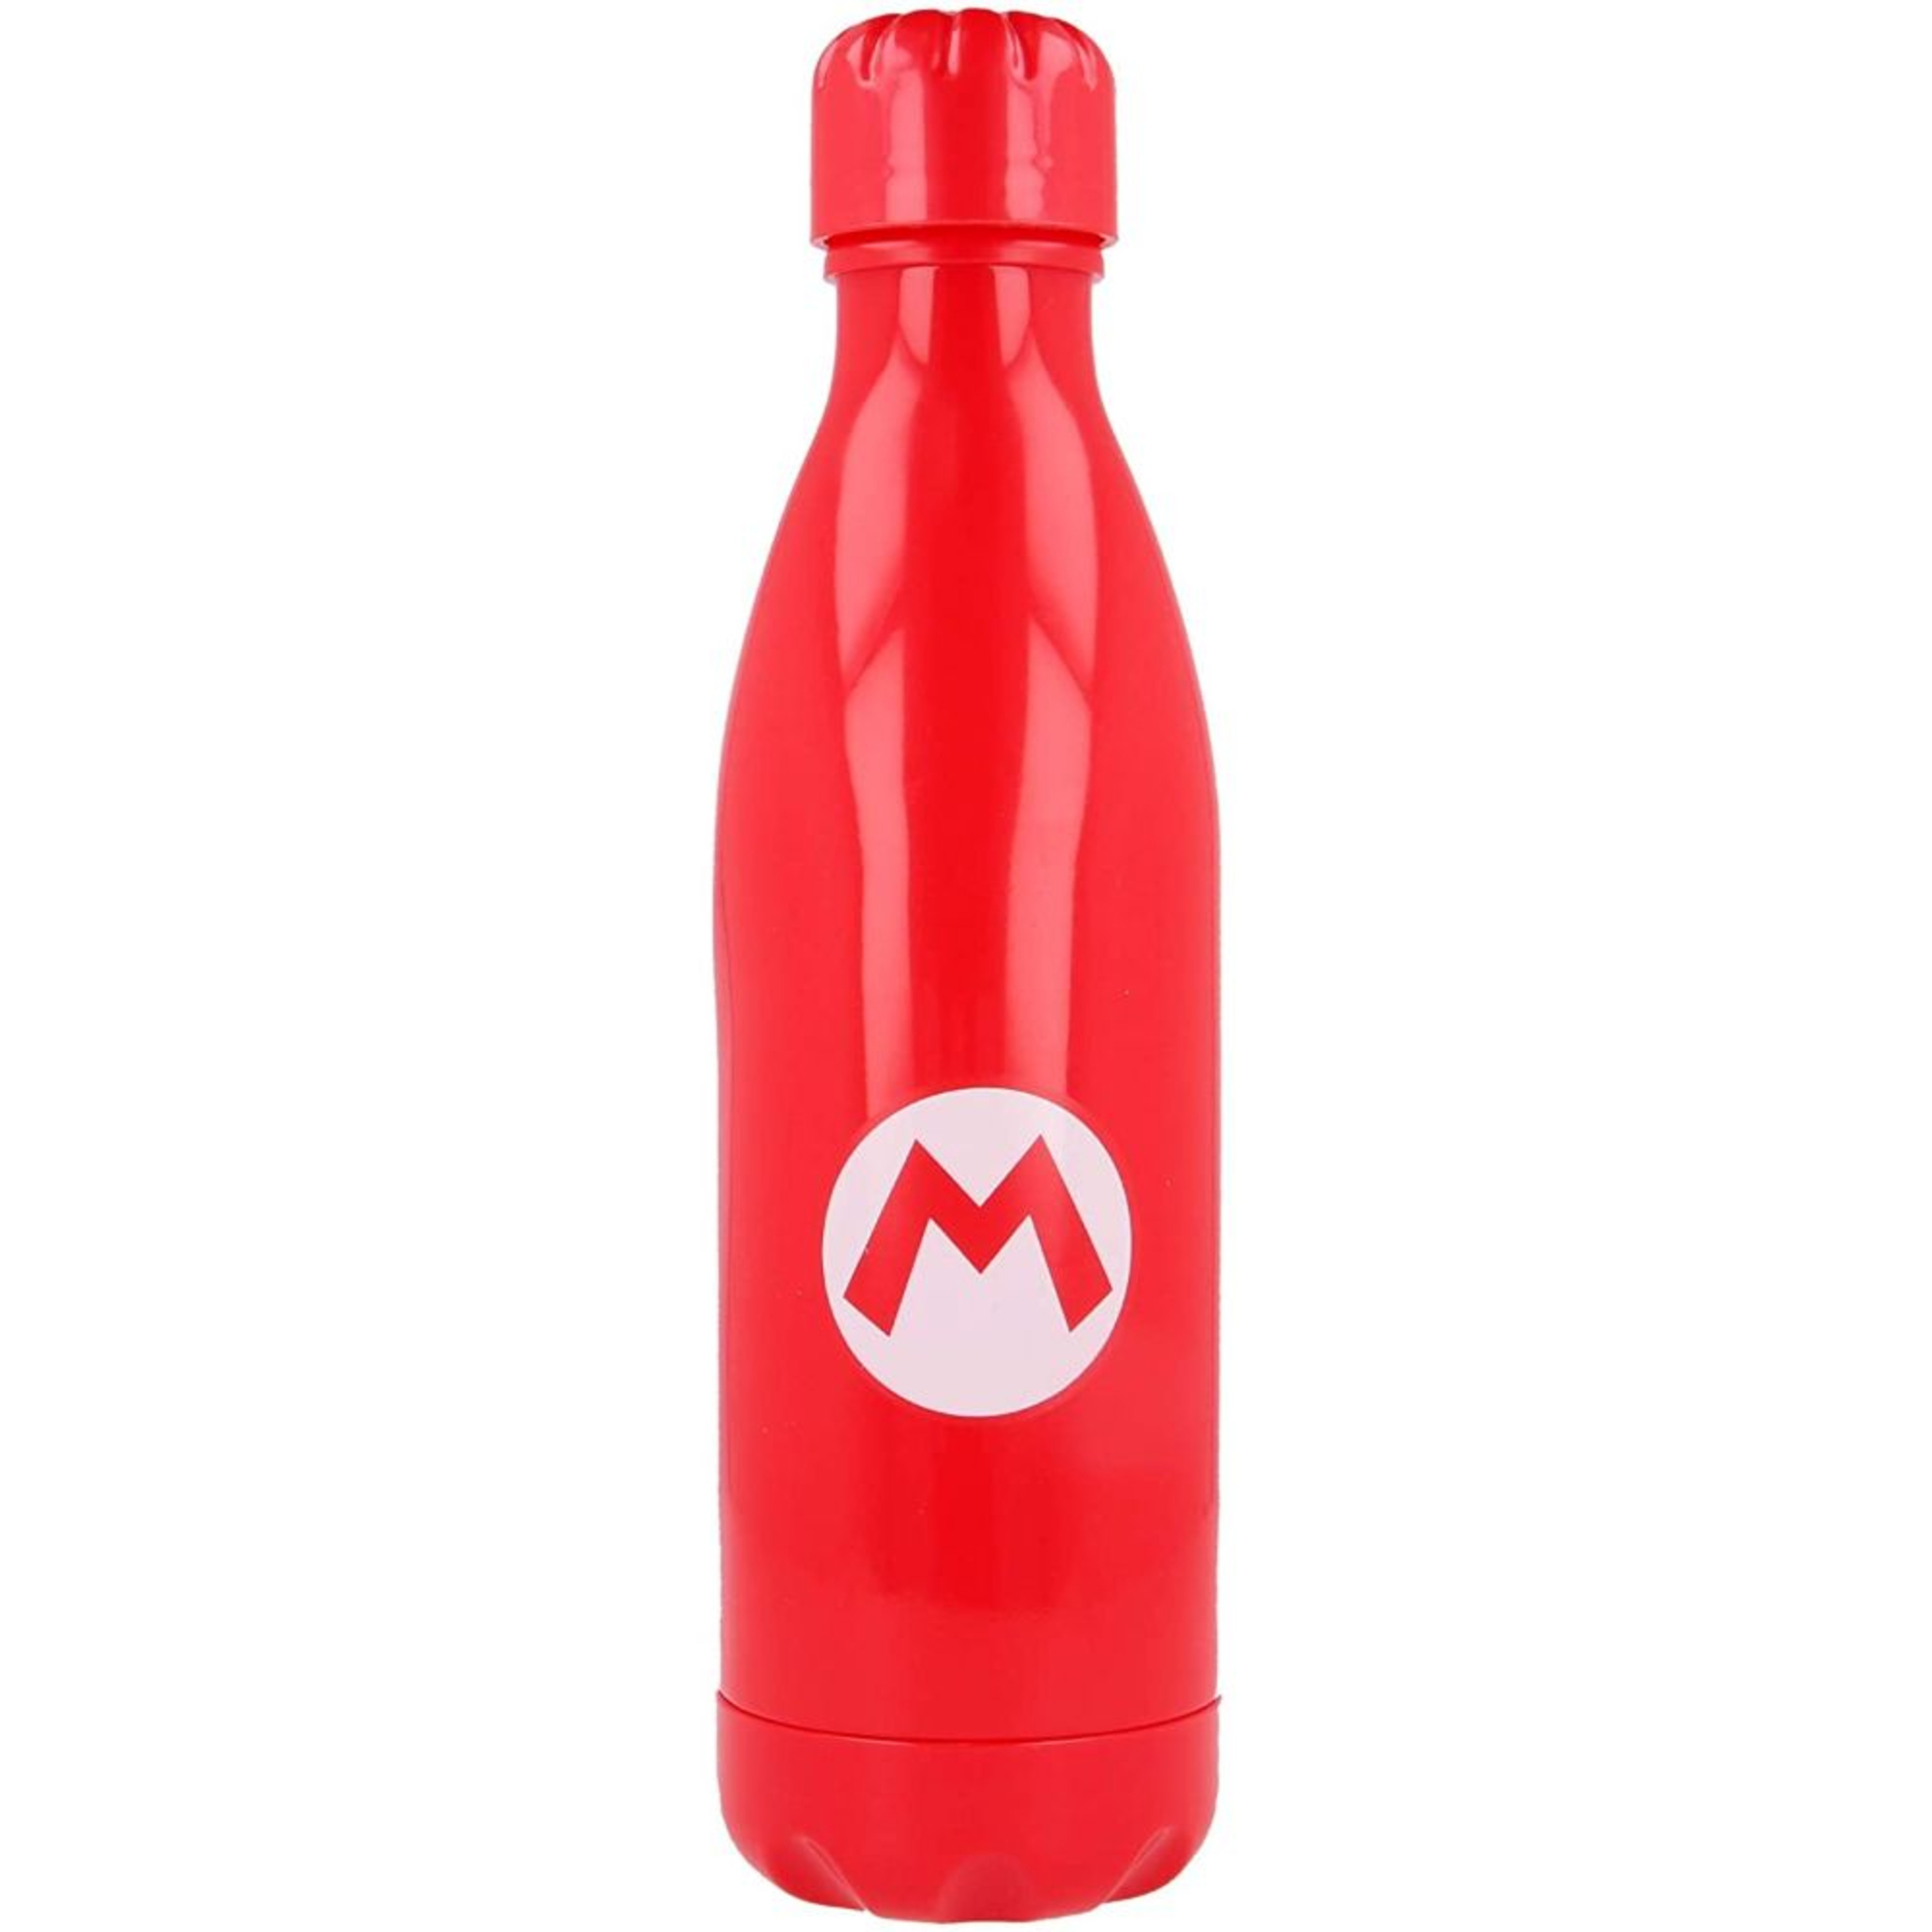 Botella Super Mario Bros 70750 - Rojo  MKP